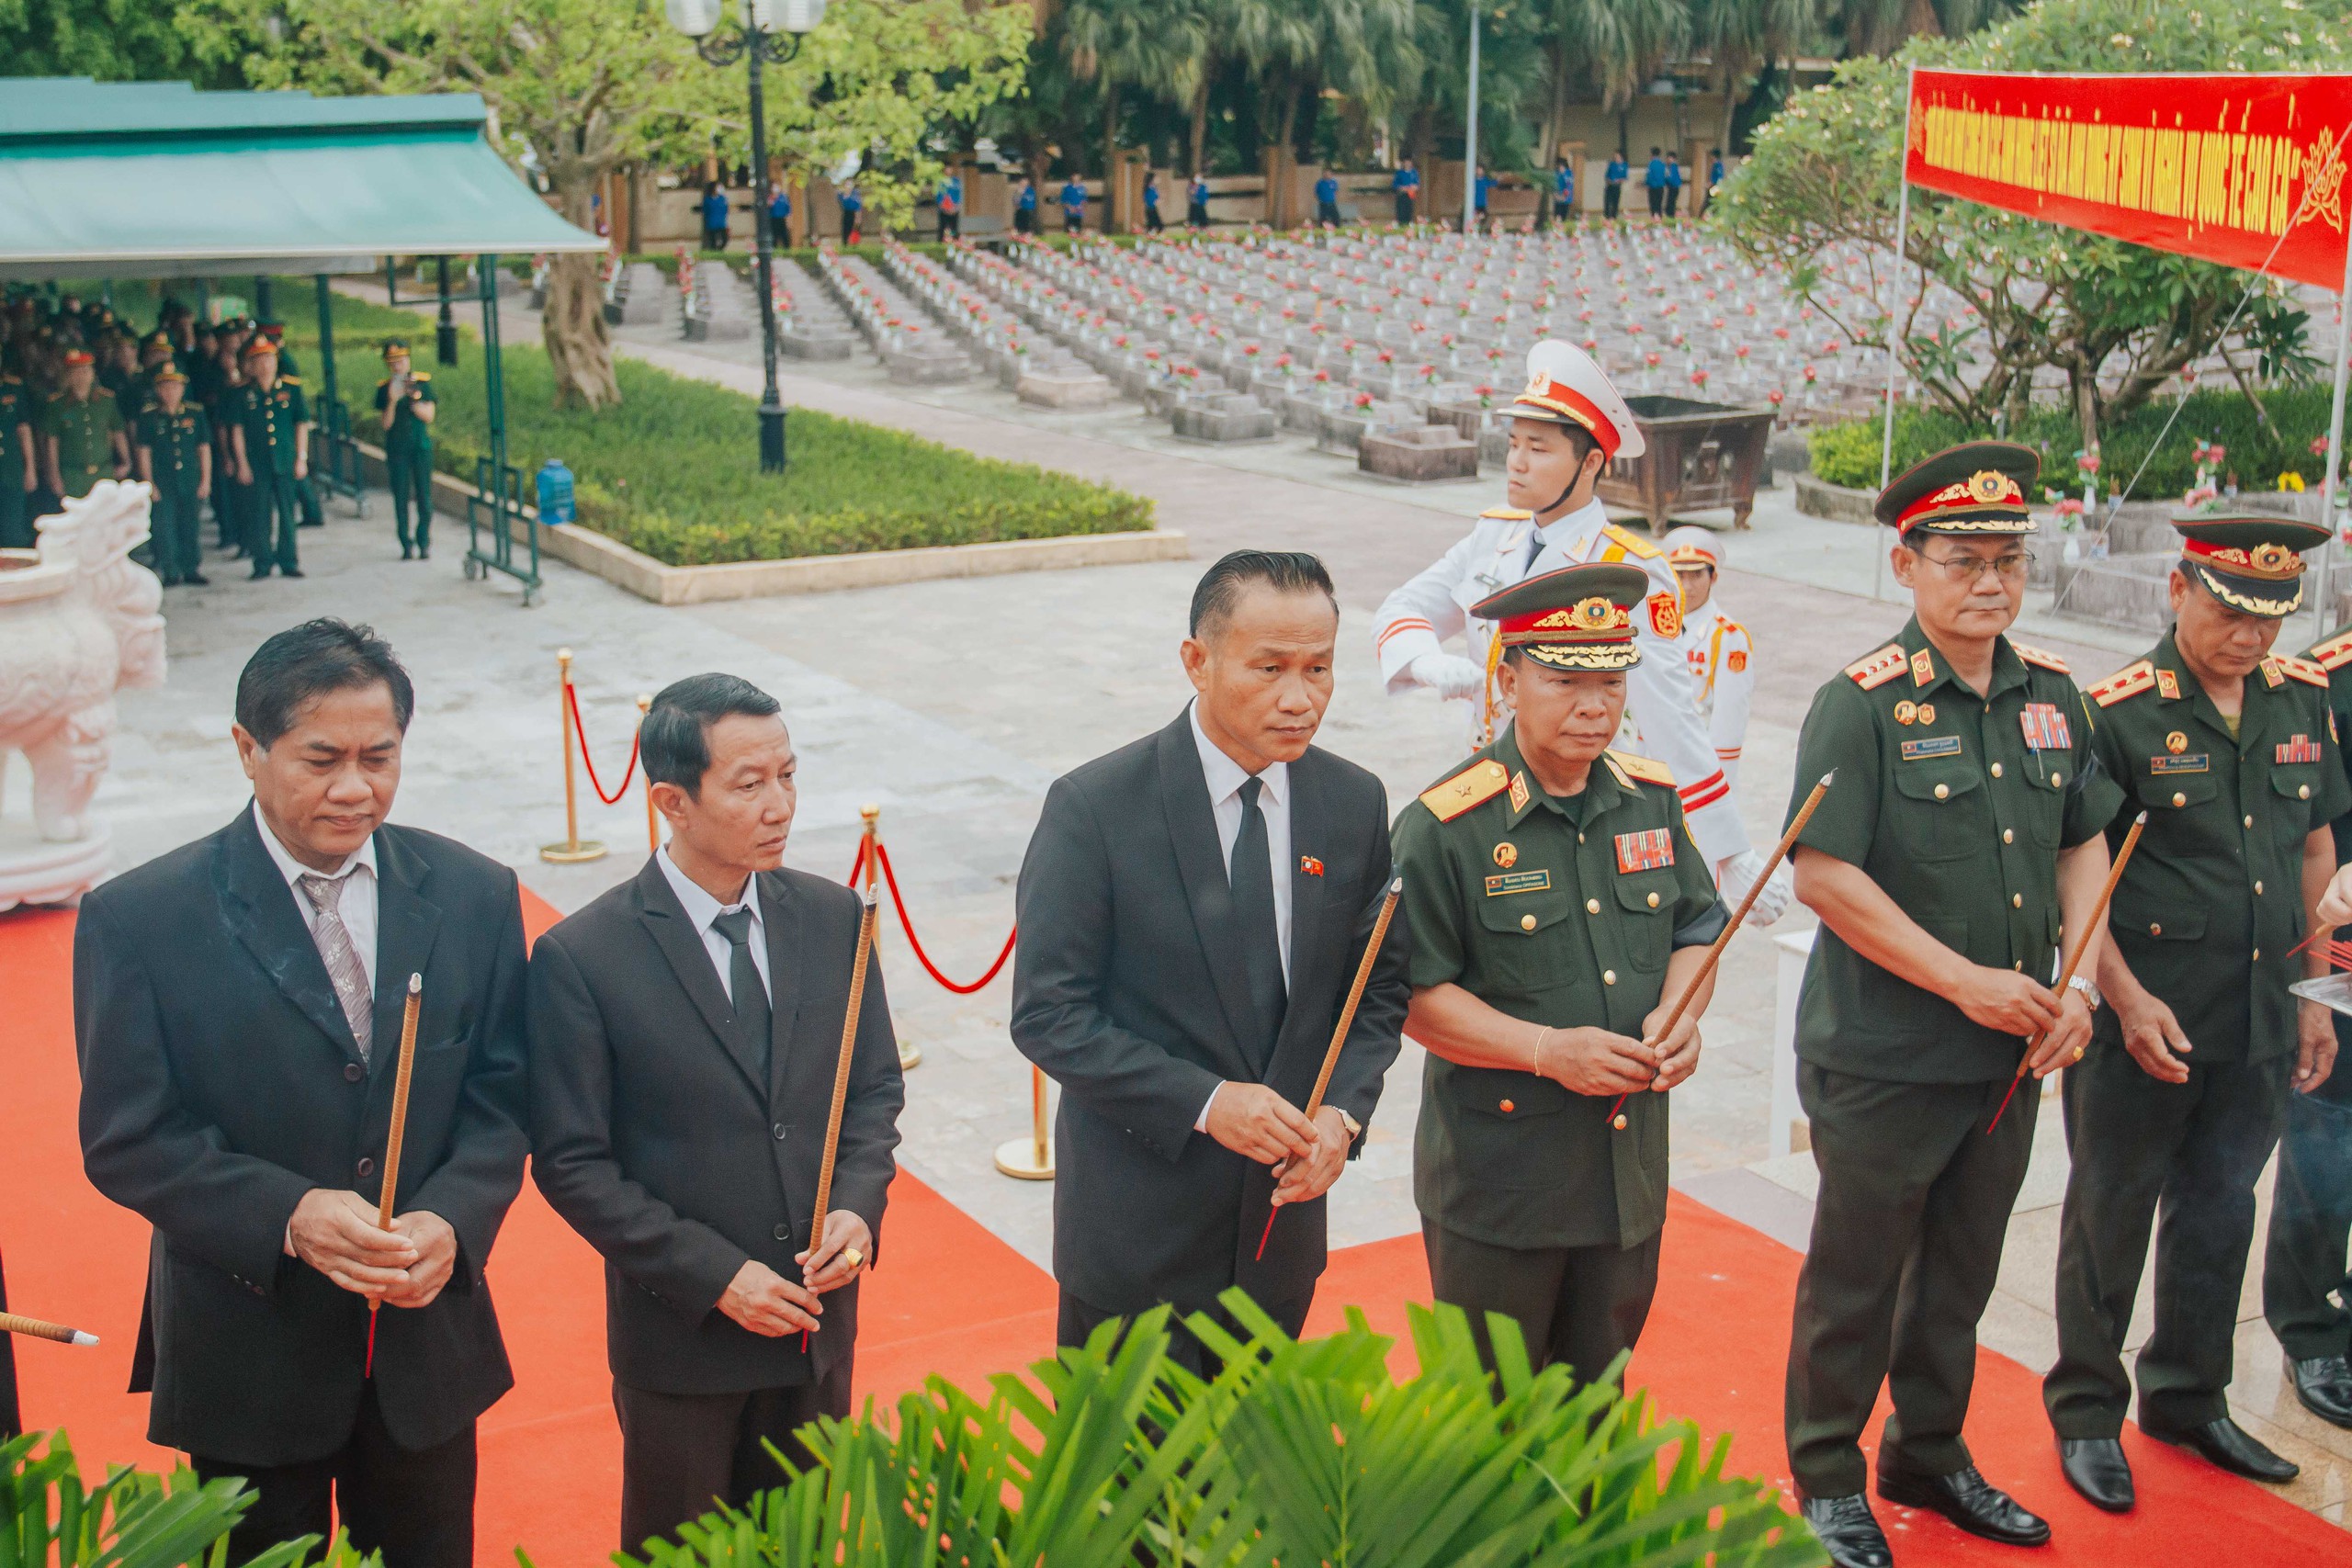 Đoàn công tác tỉnh Khăm Muồn gửi lời biết ơn sâu sắc đến các liệt sĩ đã hy sinh vì nền độc lập, hòa bình của 2 nước Việt - Lào